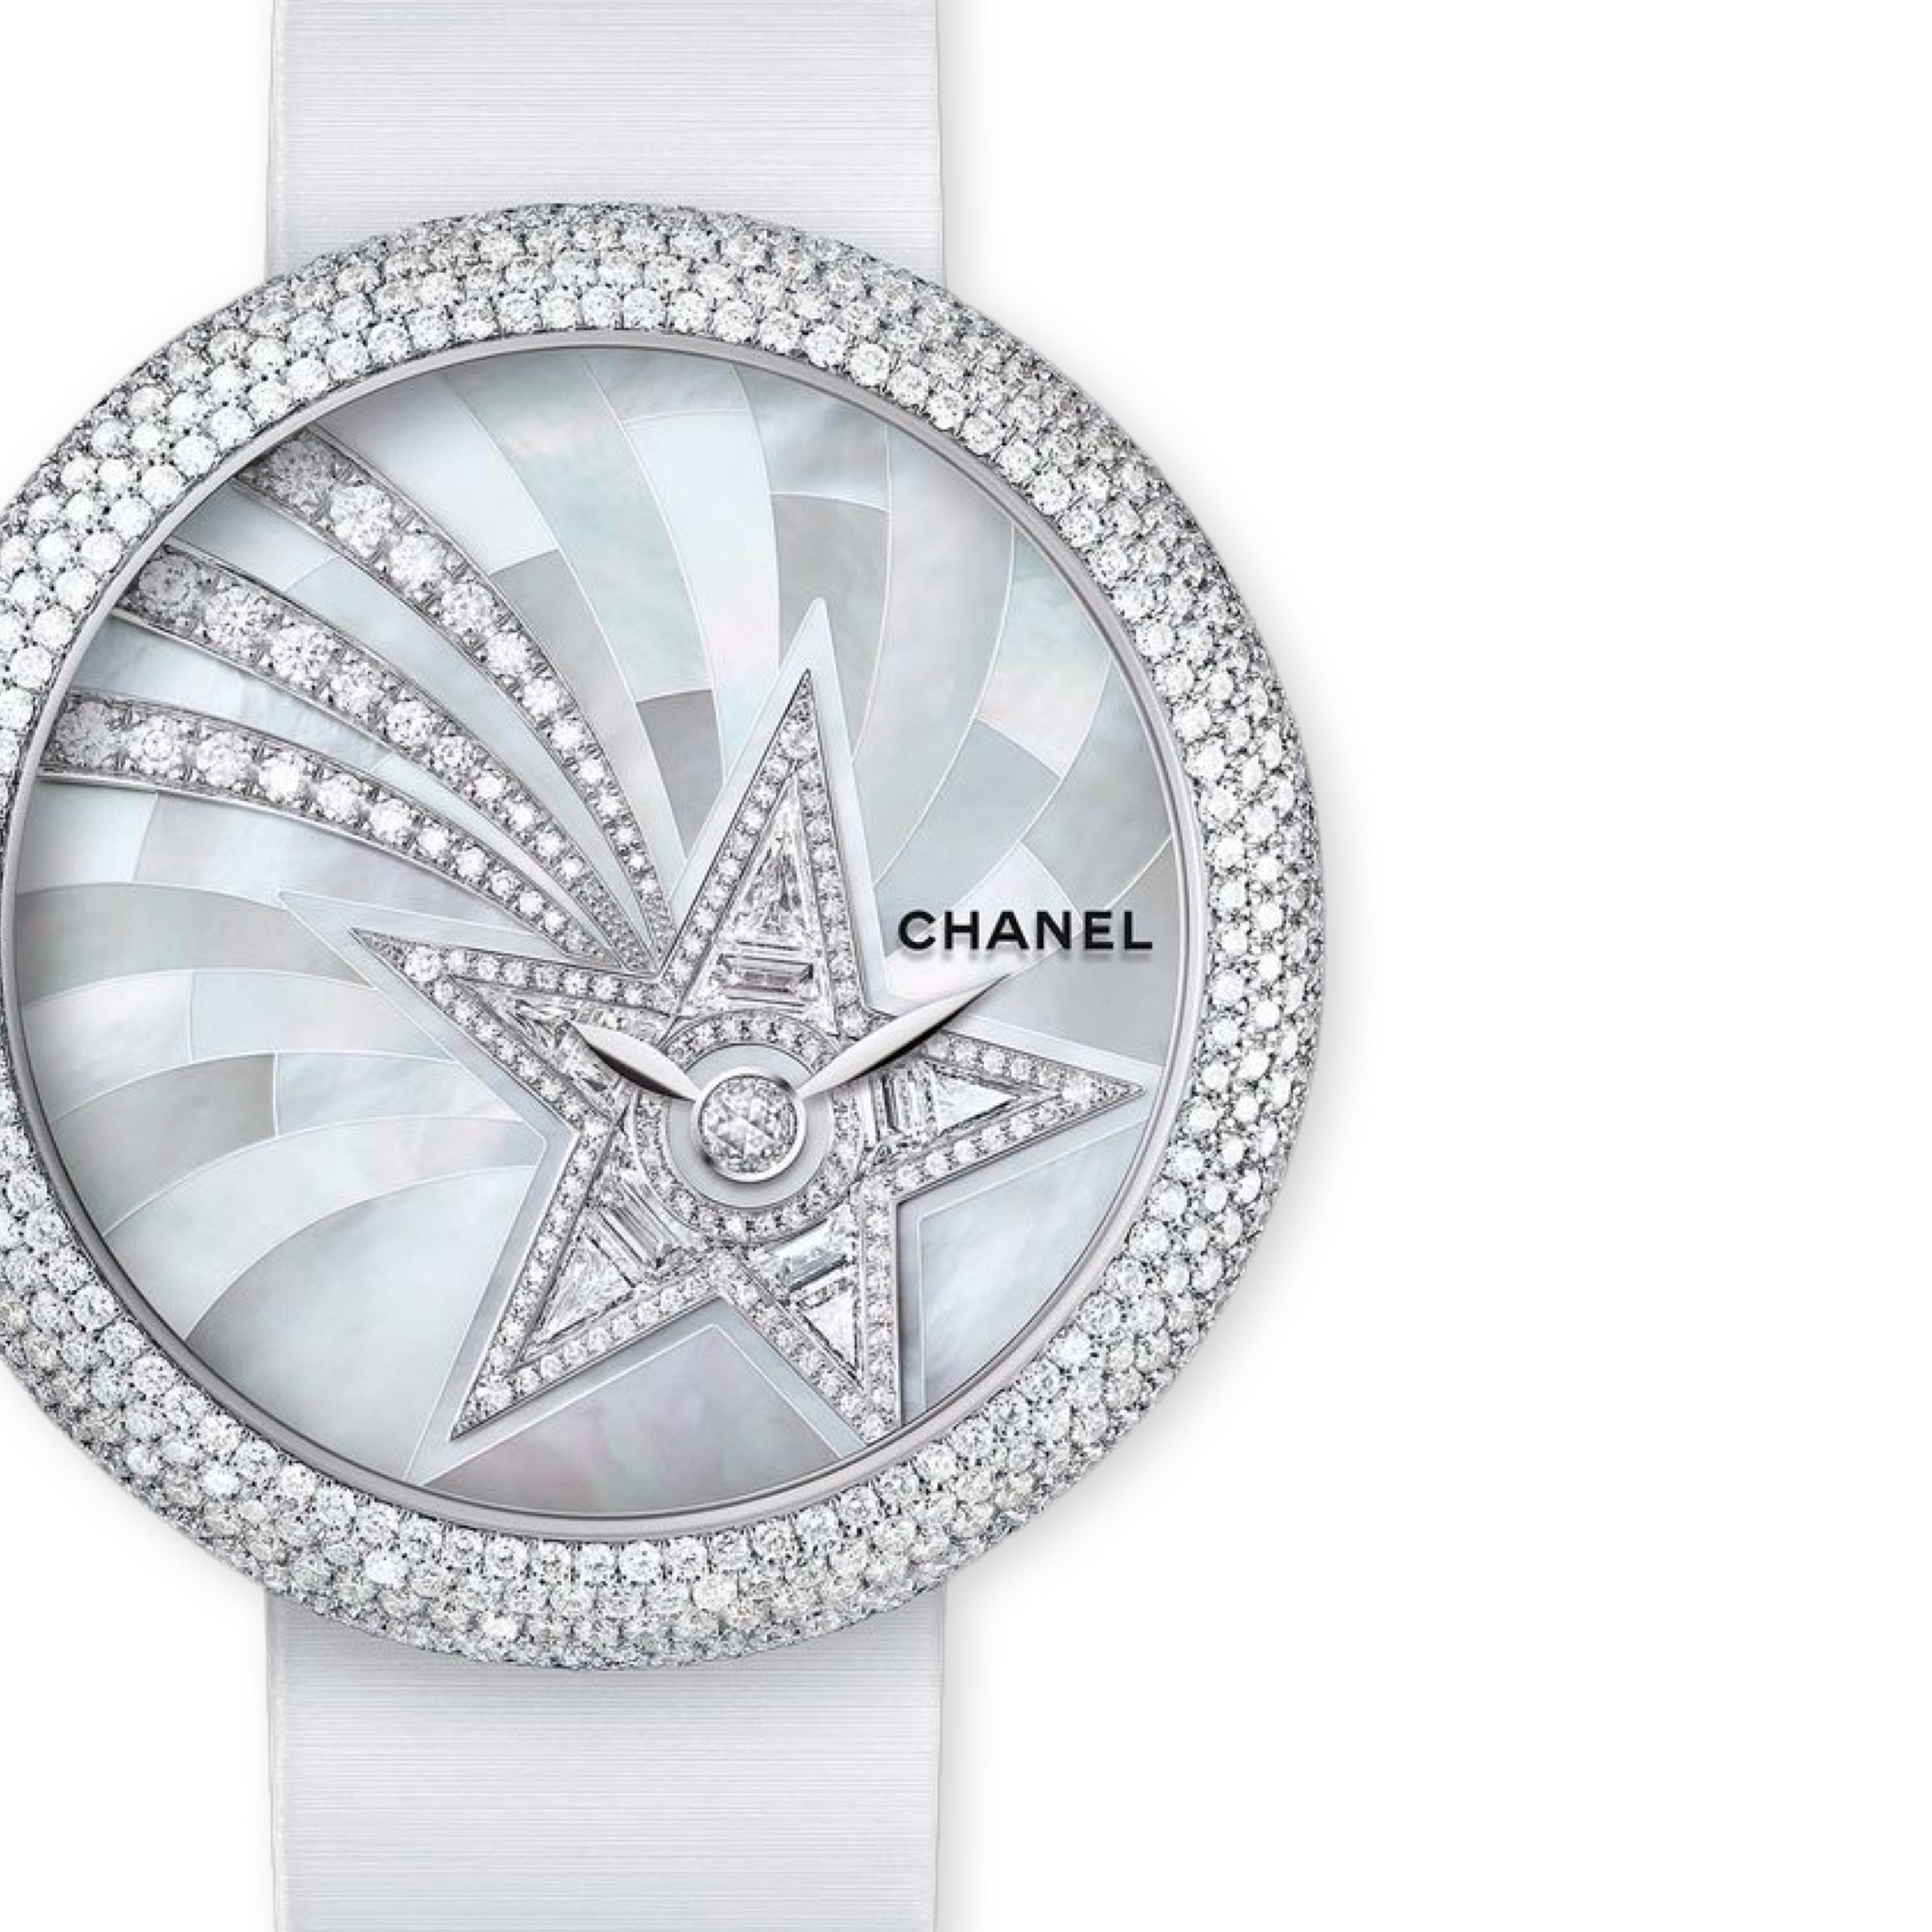 Chanel Numéro de modèle : H4531
Montre Chanel Mademoiselle Privé Quartz - Boîtier or blanc diamant - Cadran diamant à marqueterie de perles et motif comète - Bracelet satin blanc
37.5mm

Boîtier en or blanc 18K 

570 diamants taille brillant (~3,14